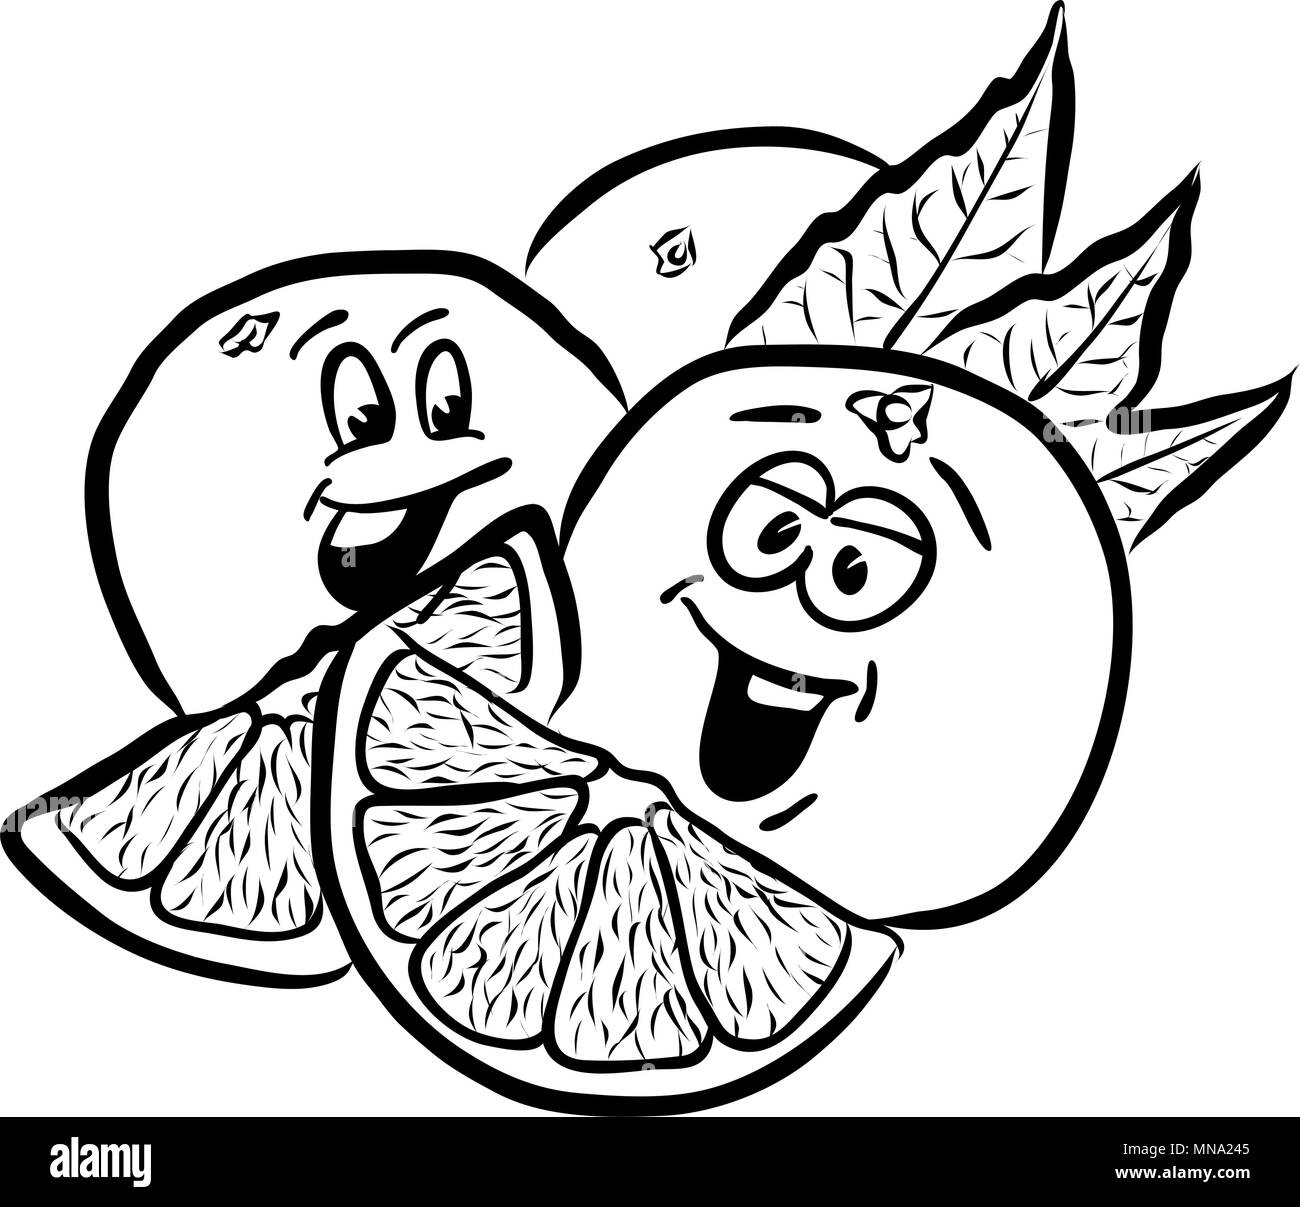 Rire des Oranges Fruits comique Sketches. Hand drawn Vector Contours des illustrations. Utile pour tout genre de publicité dans le web et print. Illustration de Vecteur